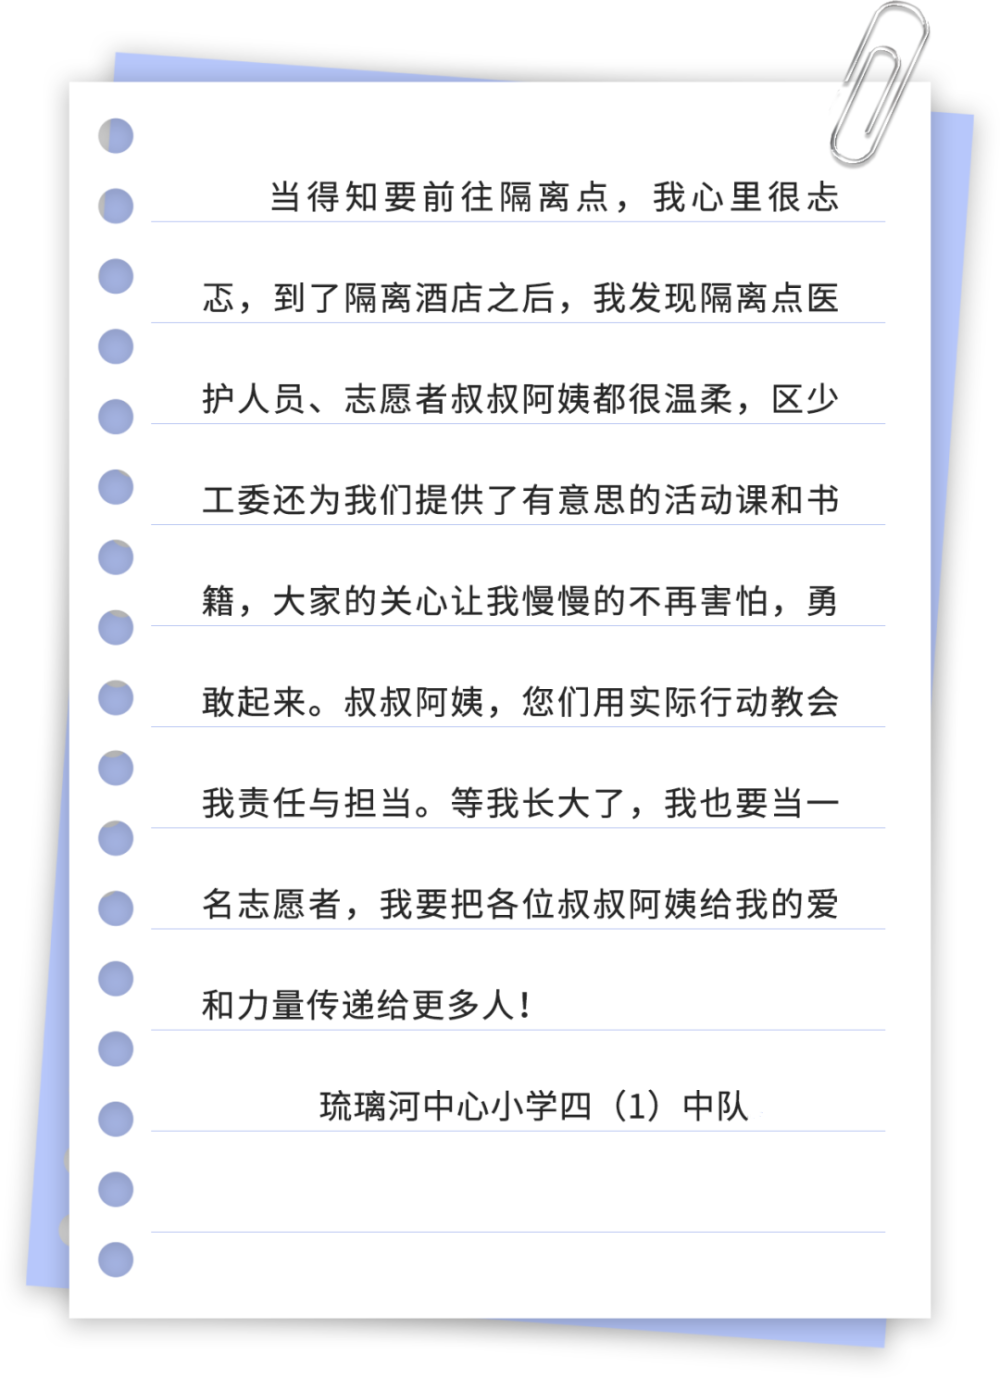 2022年11月24日《石景山新闻》ssh手机版下载